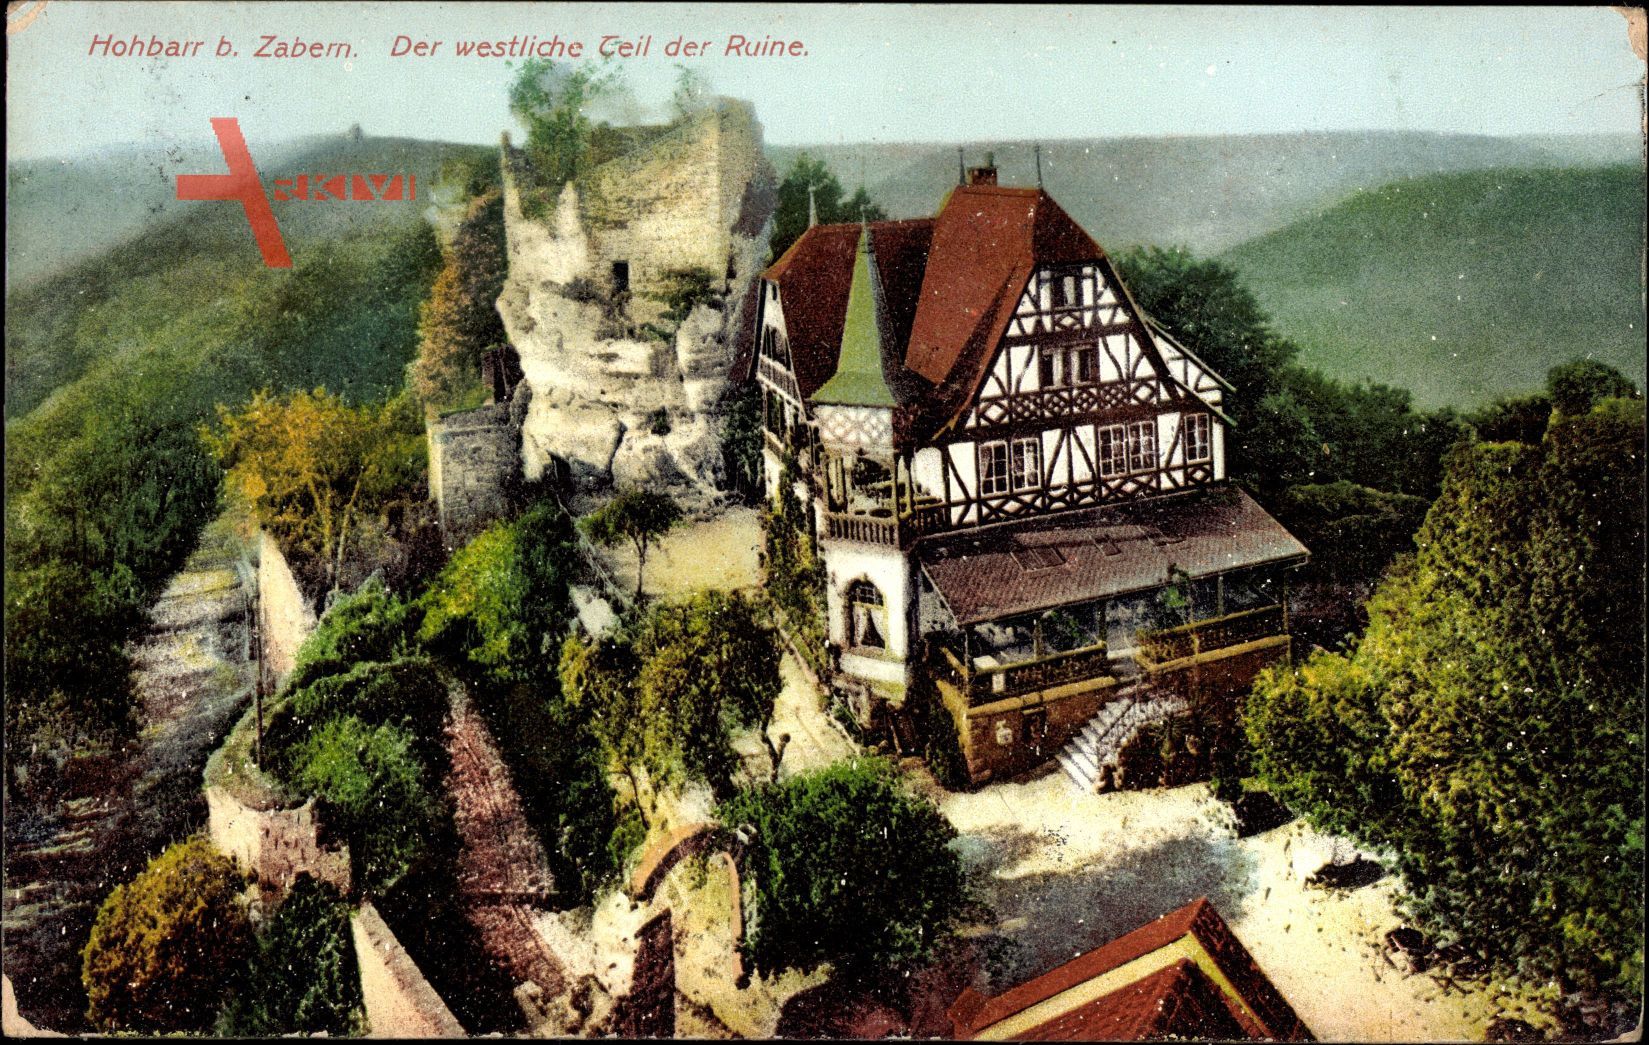 Elsaß Bas Rhin, Burg Hohbarr bei Zabern, Westlicher Teil der Ruine